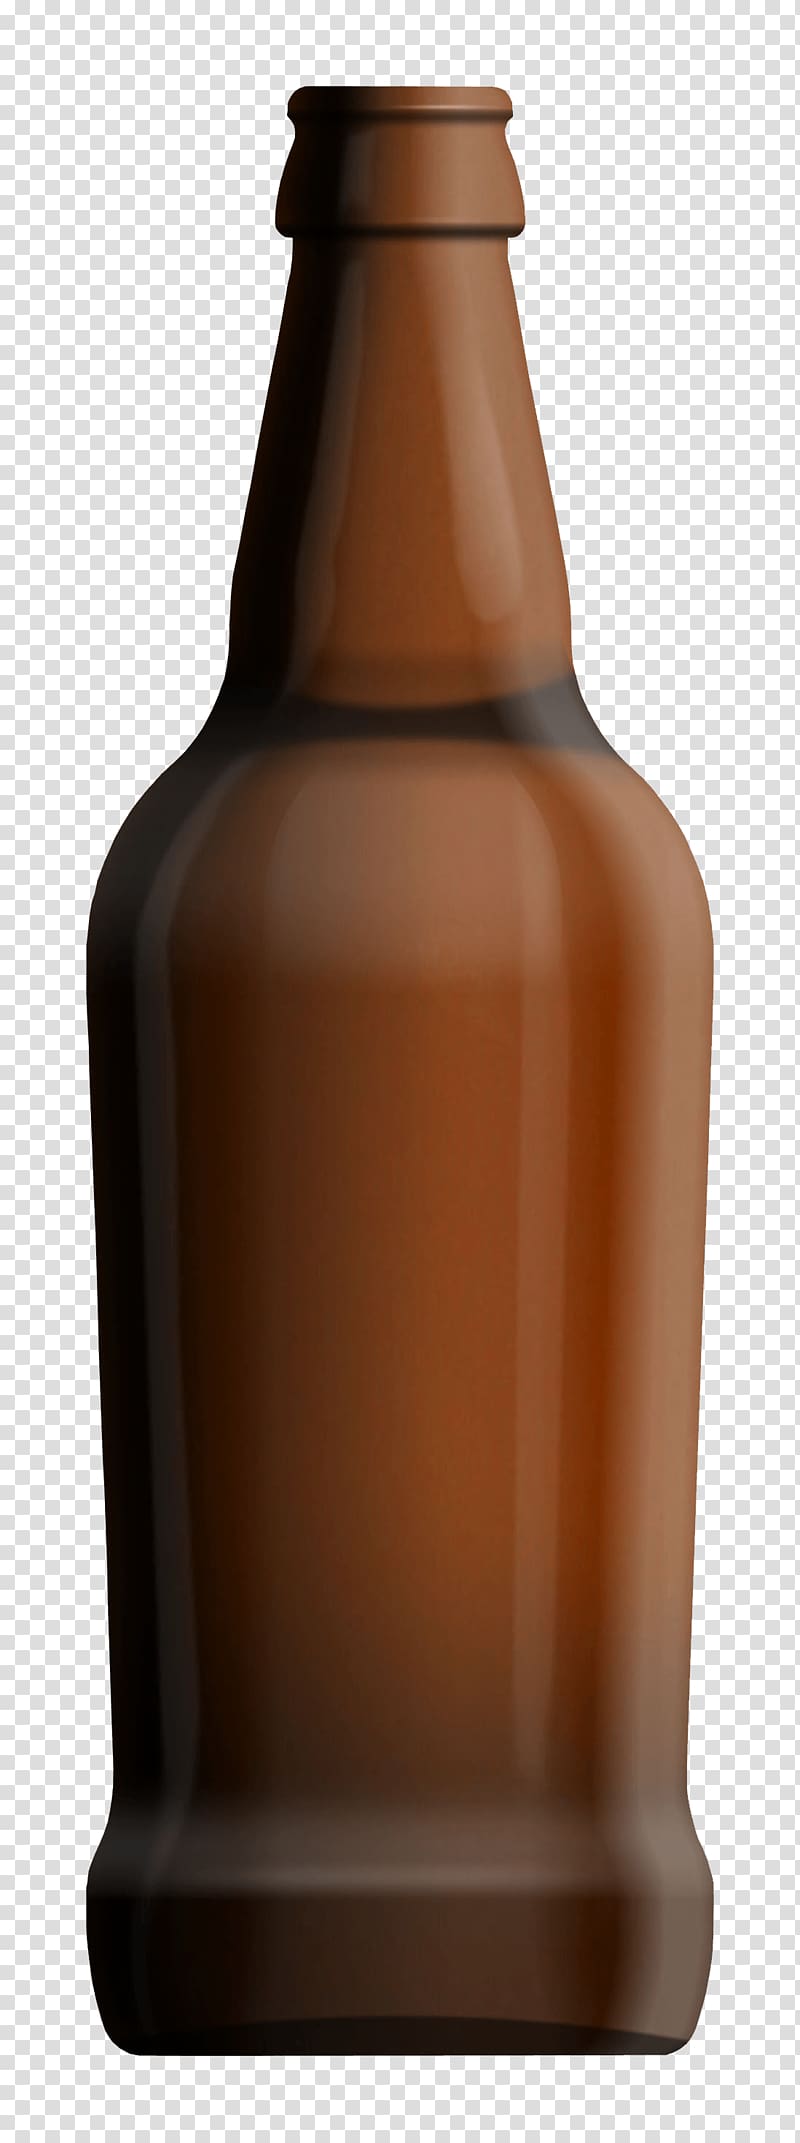 Beer bottle Champagne , Beer Bottle transparent background PNG clipart